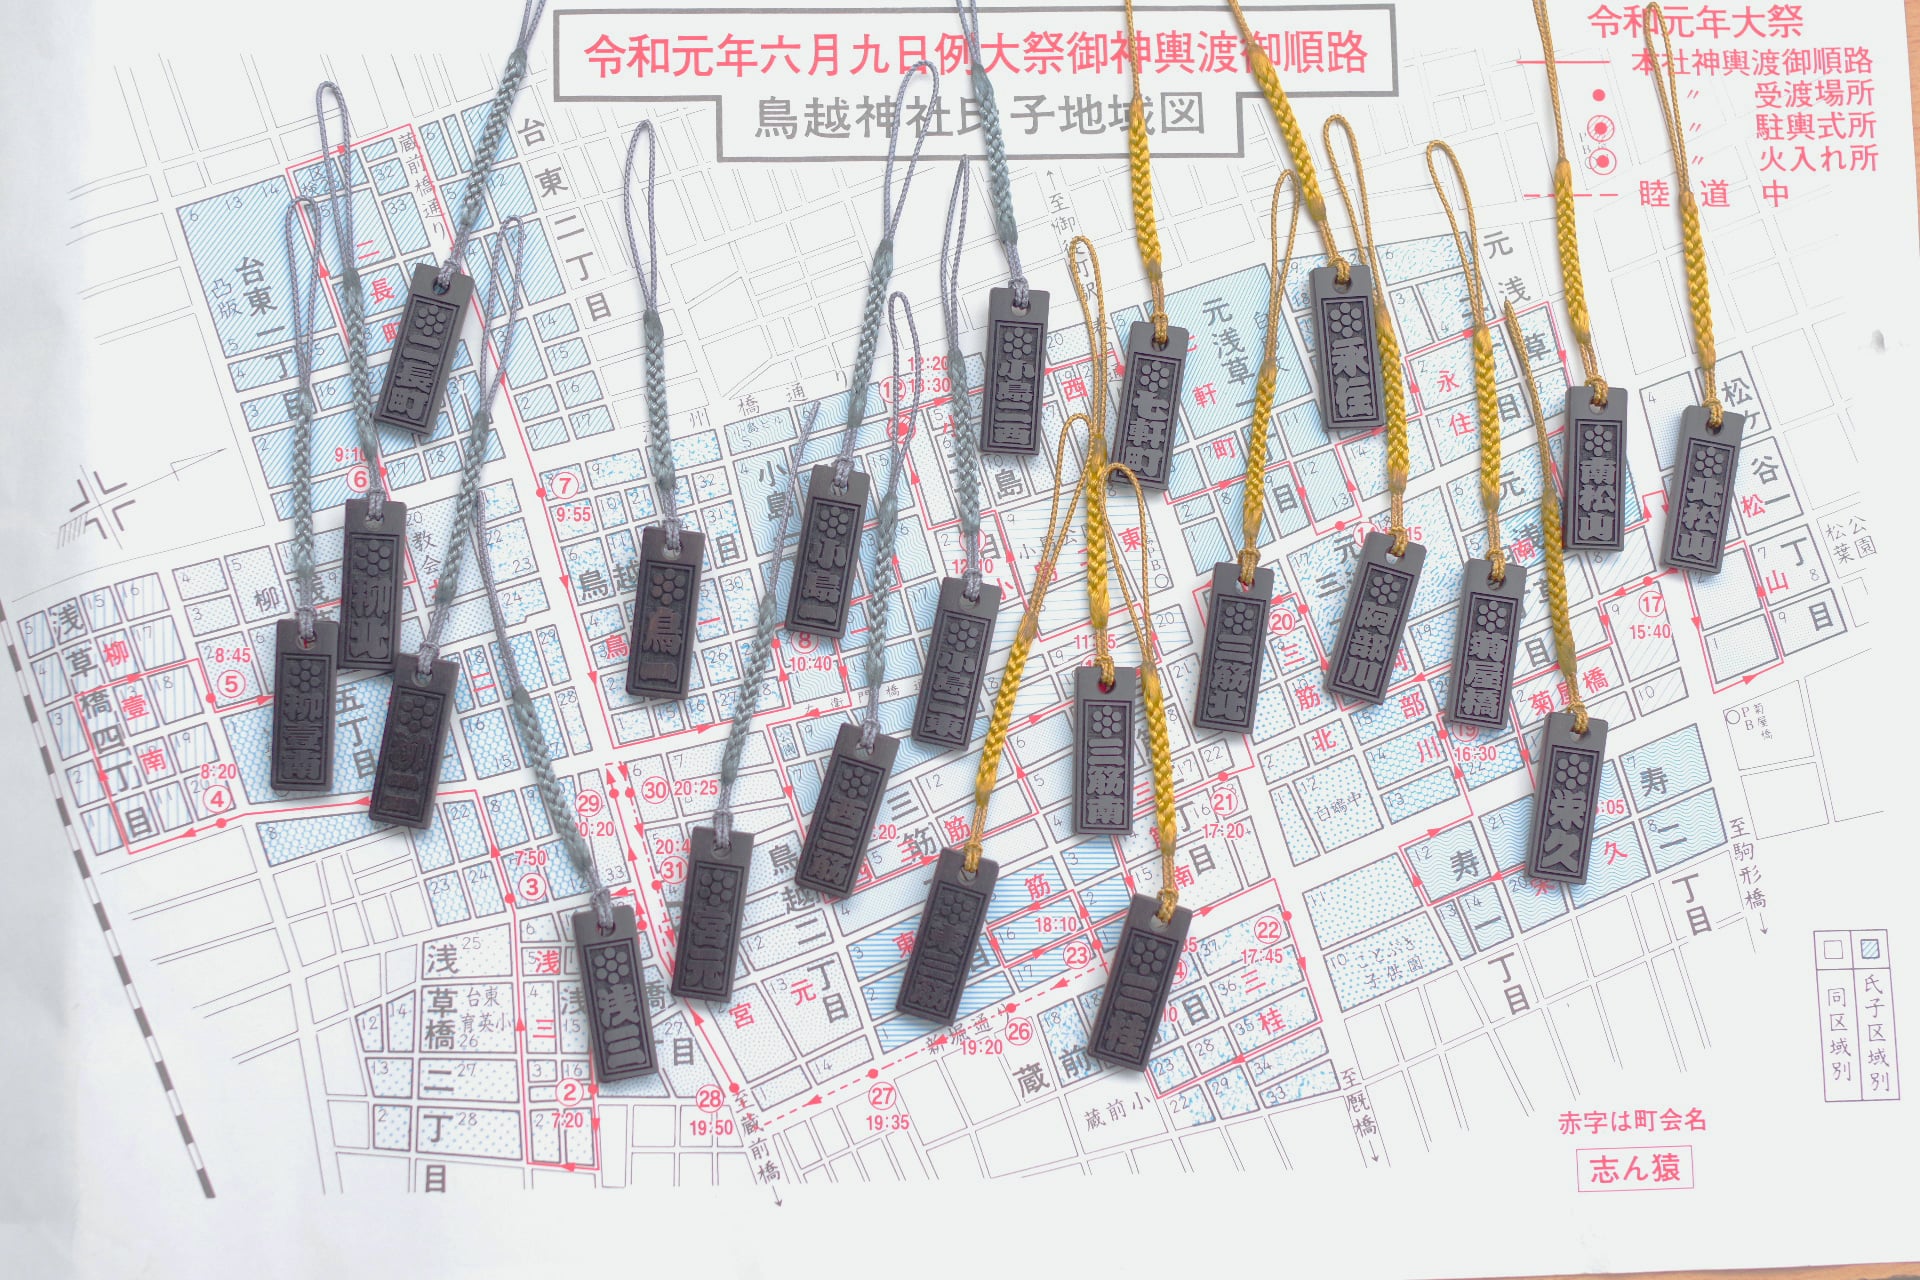 鳥越神社氏子町会の木札を地域図に並べる